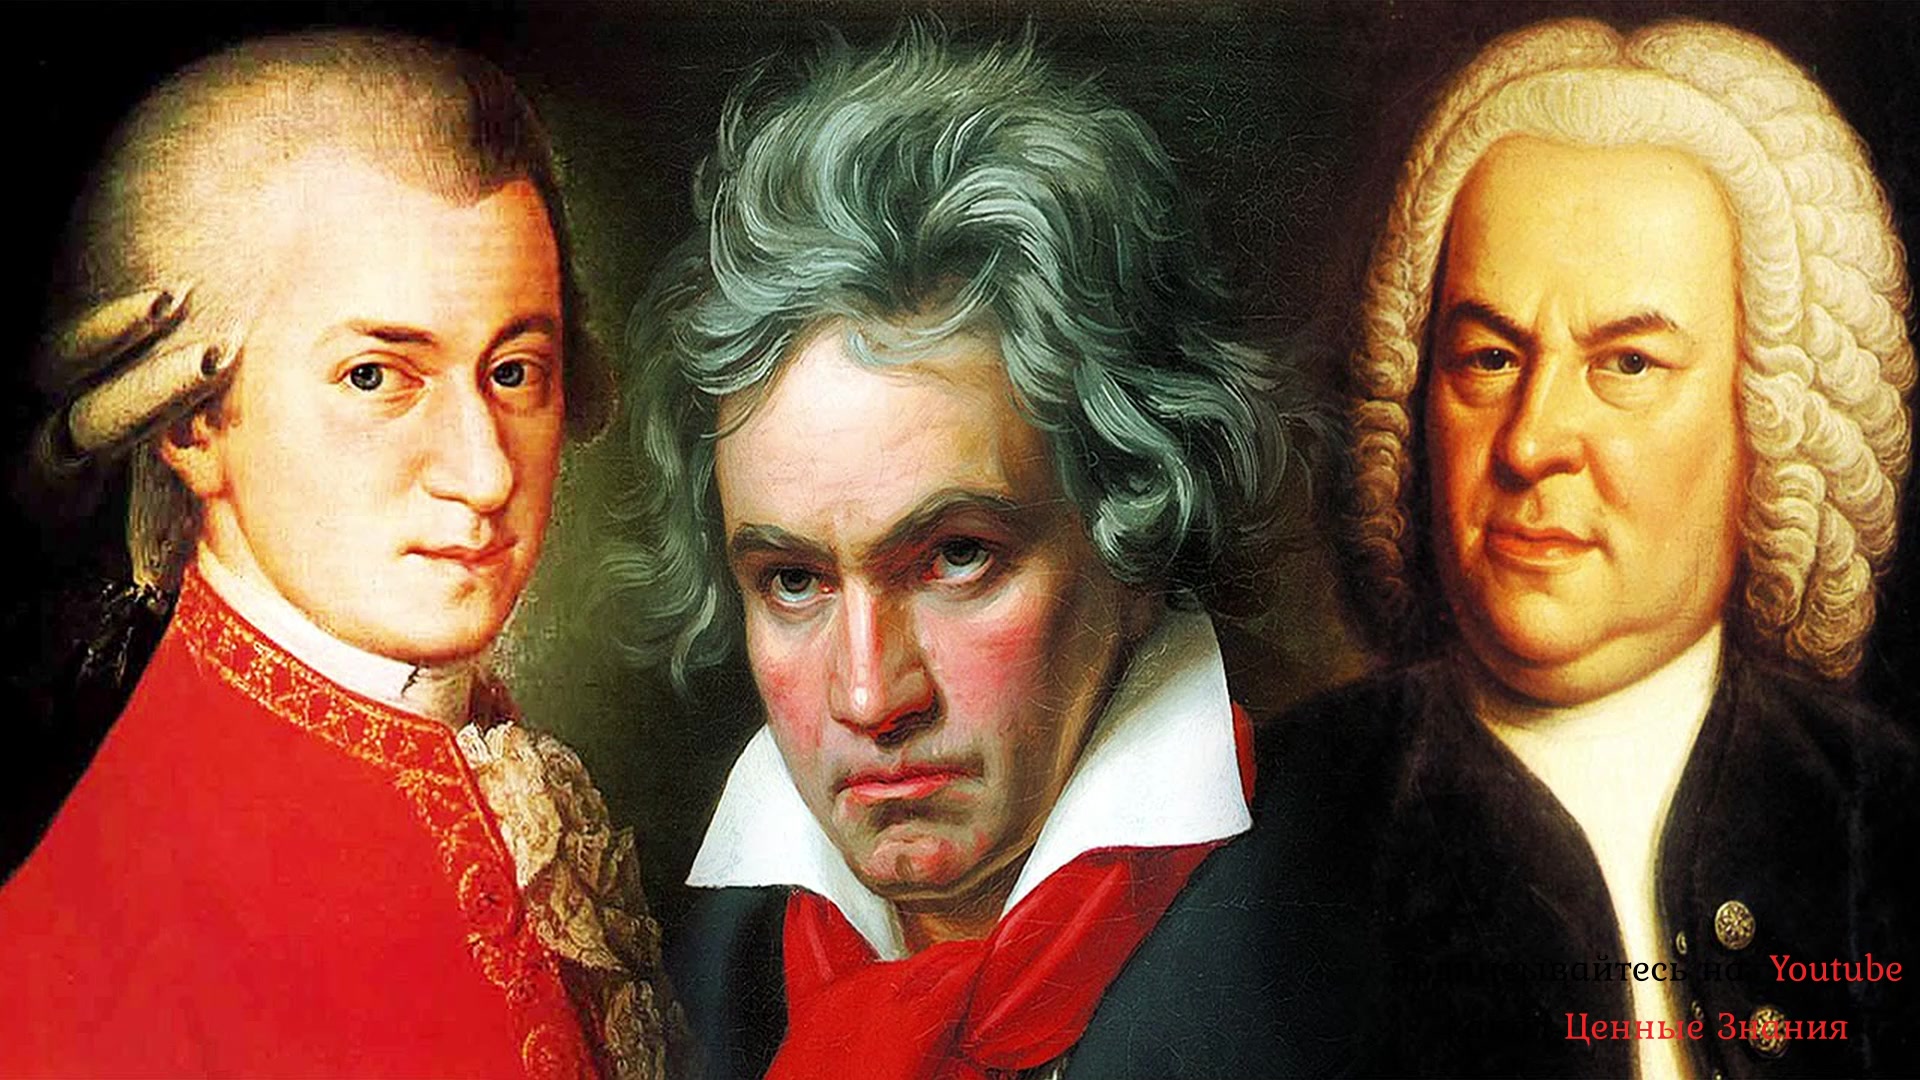 Моцарт и бетховен слушать. Гайдн Моцарт Бетховен Венские классики. Портрет Гайдна Моцарта и Бетховена. Композиторы -классики -Моцарт, Гайдн, Бетховен. Бах. Моцарт. Бетховен.